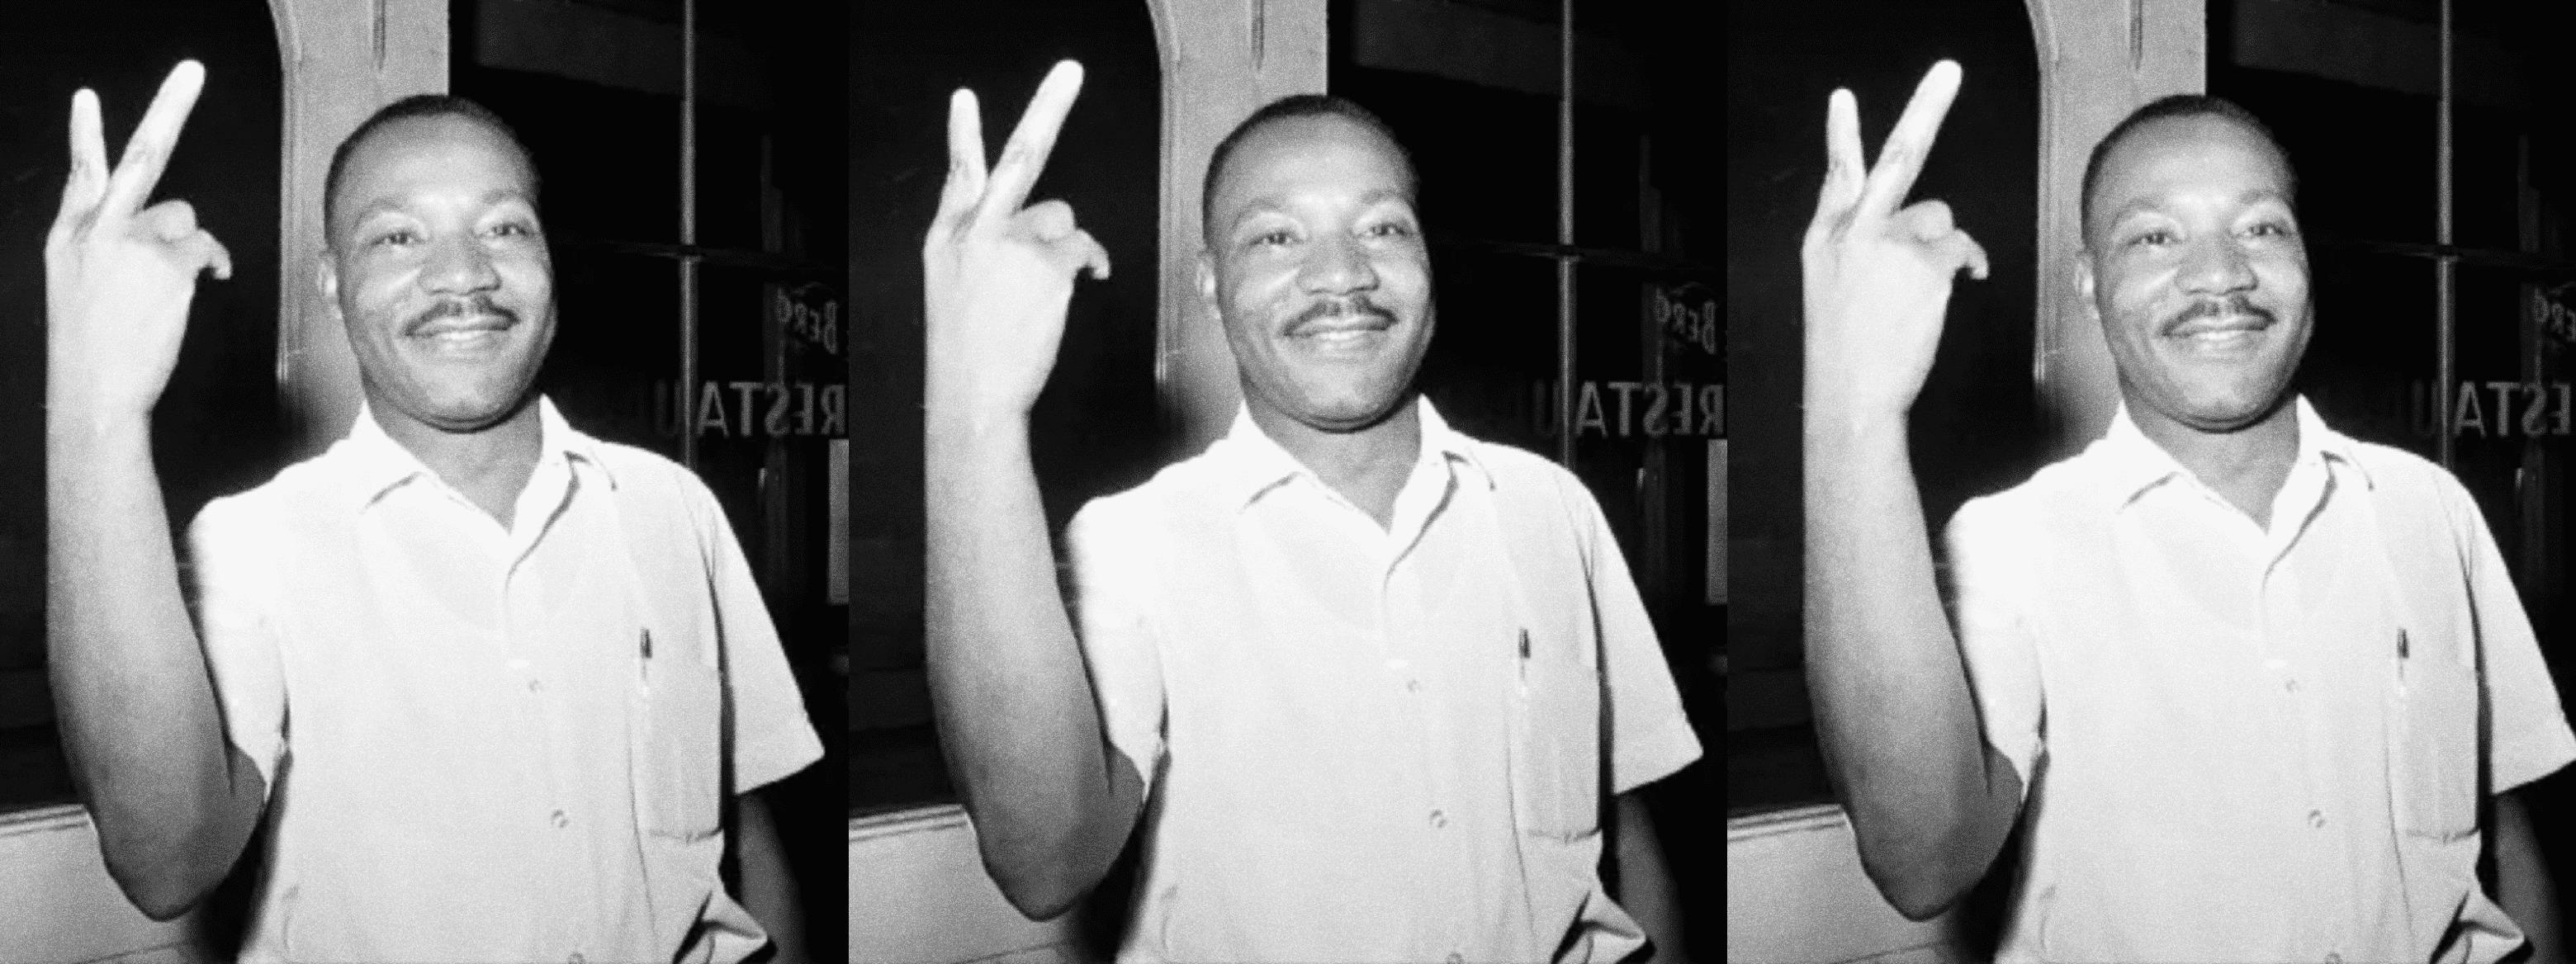 Honoring MLK Jr. Day